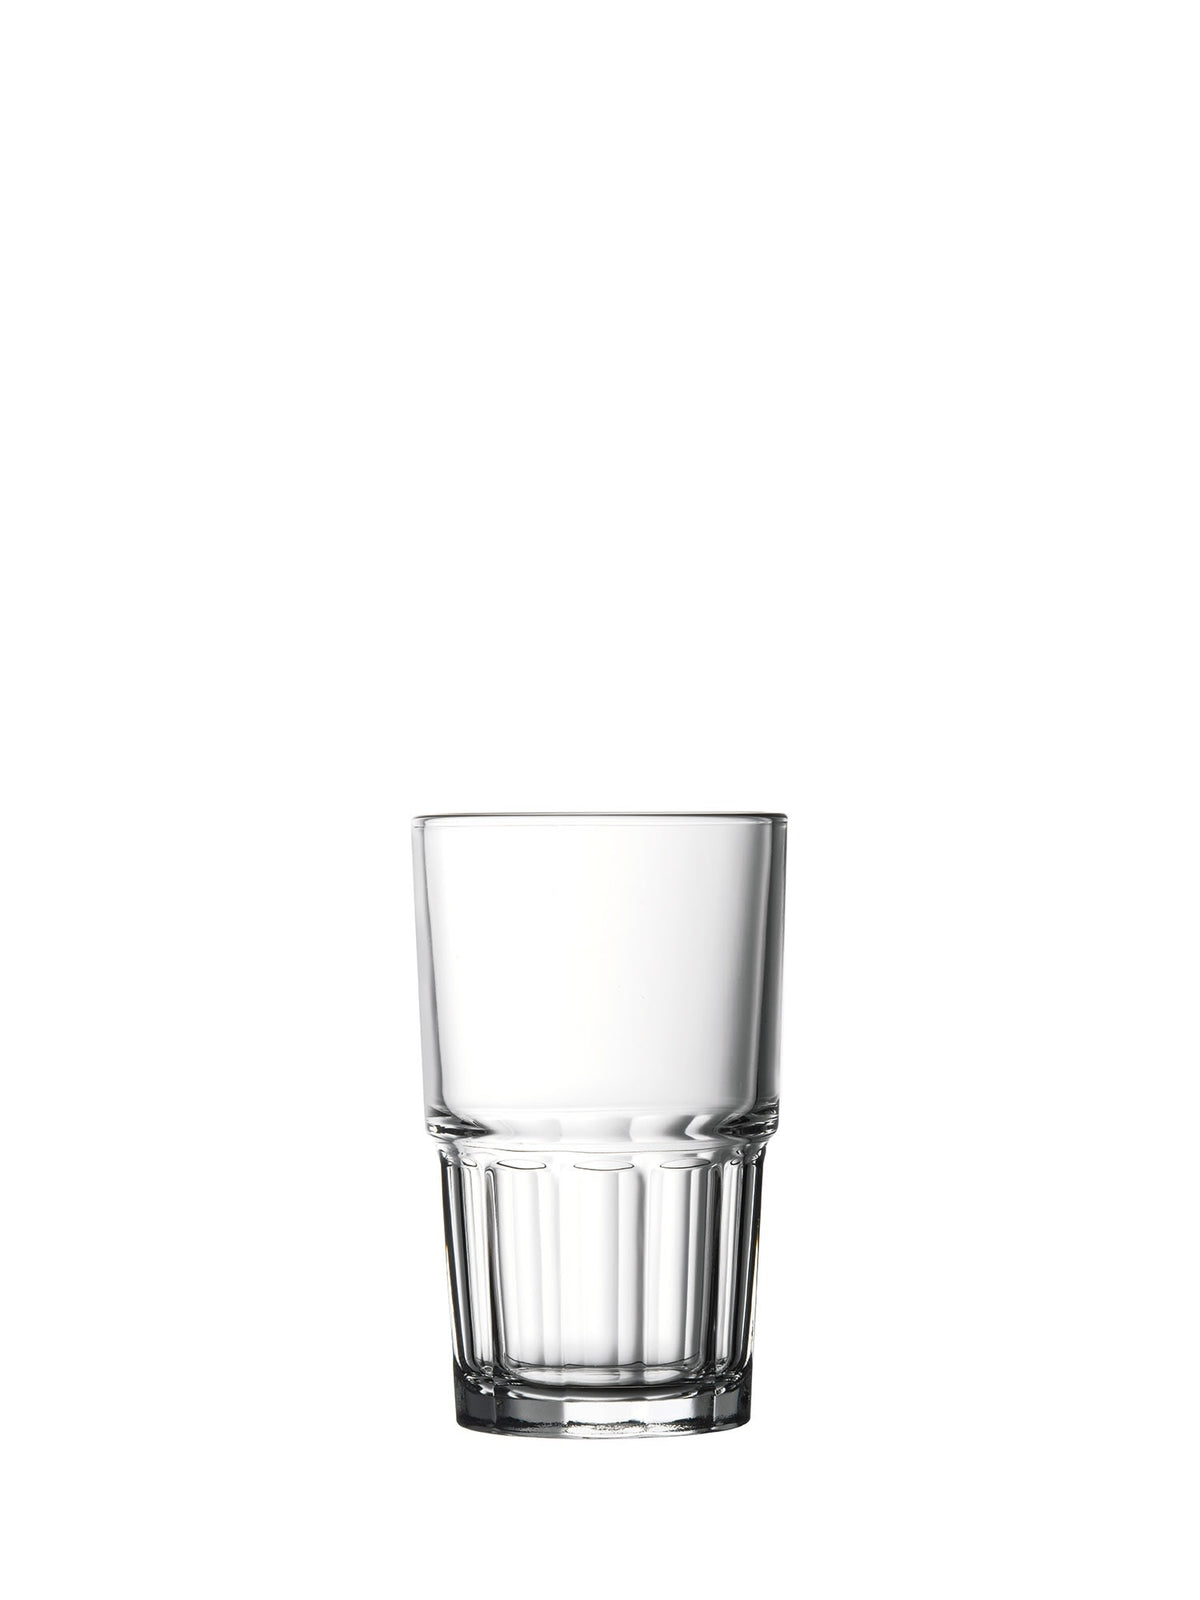 Et alsidigt glas til enhver lejlighed, perfekt til vandservering eller cocktails.